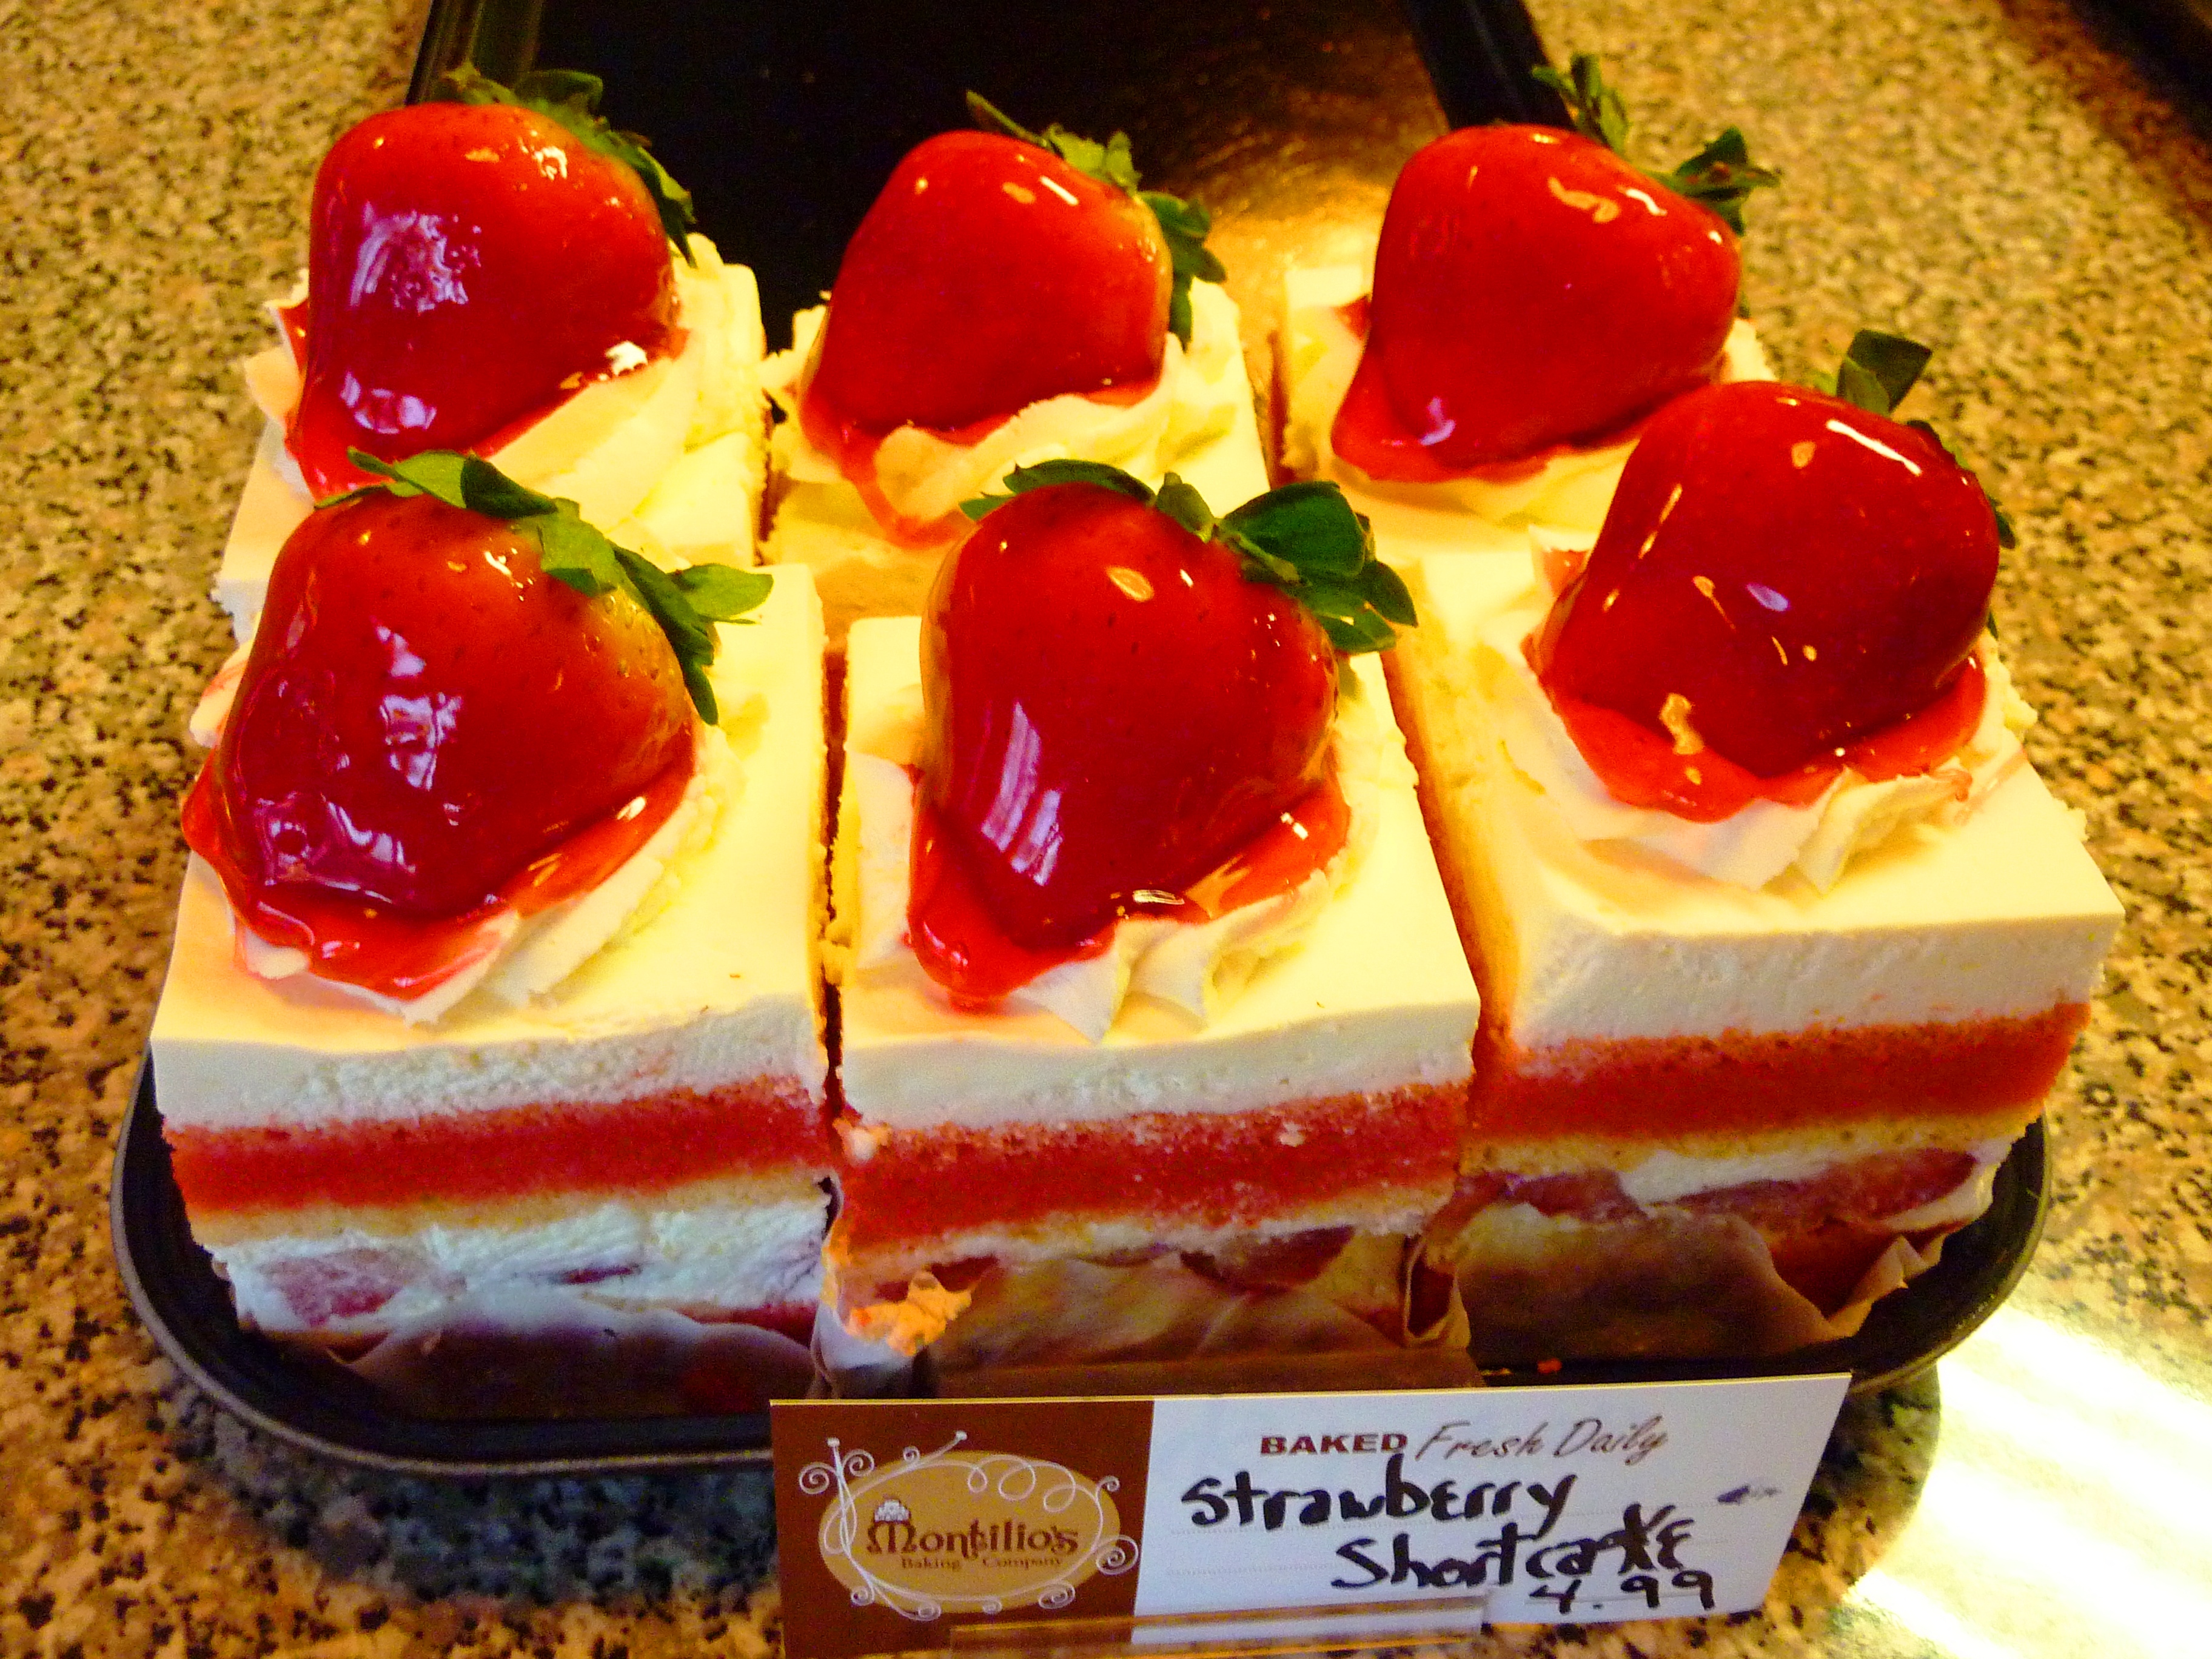 Montilio's strawberry shortcake at CRISPWalpole in Walpole, MA.